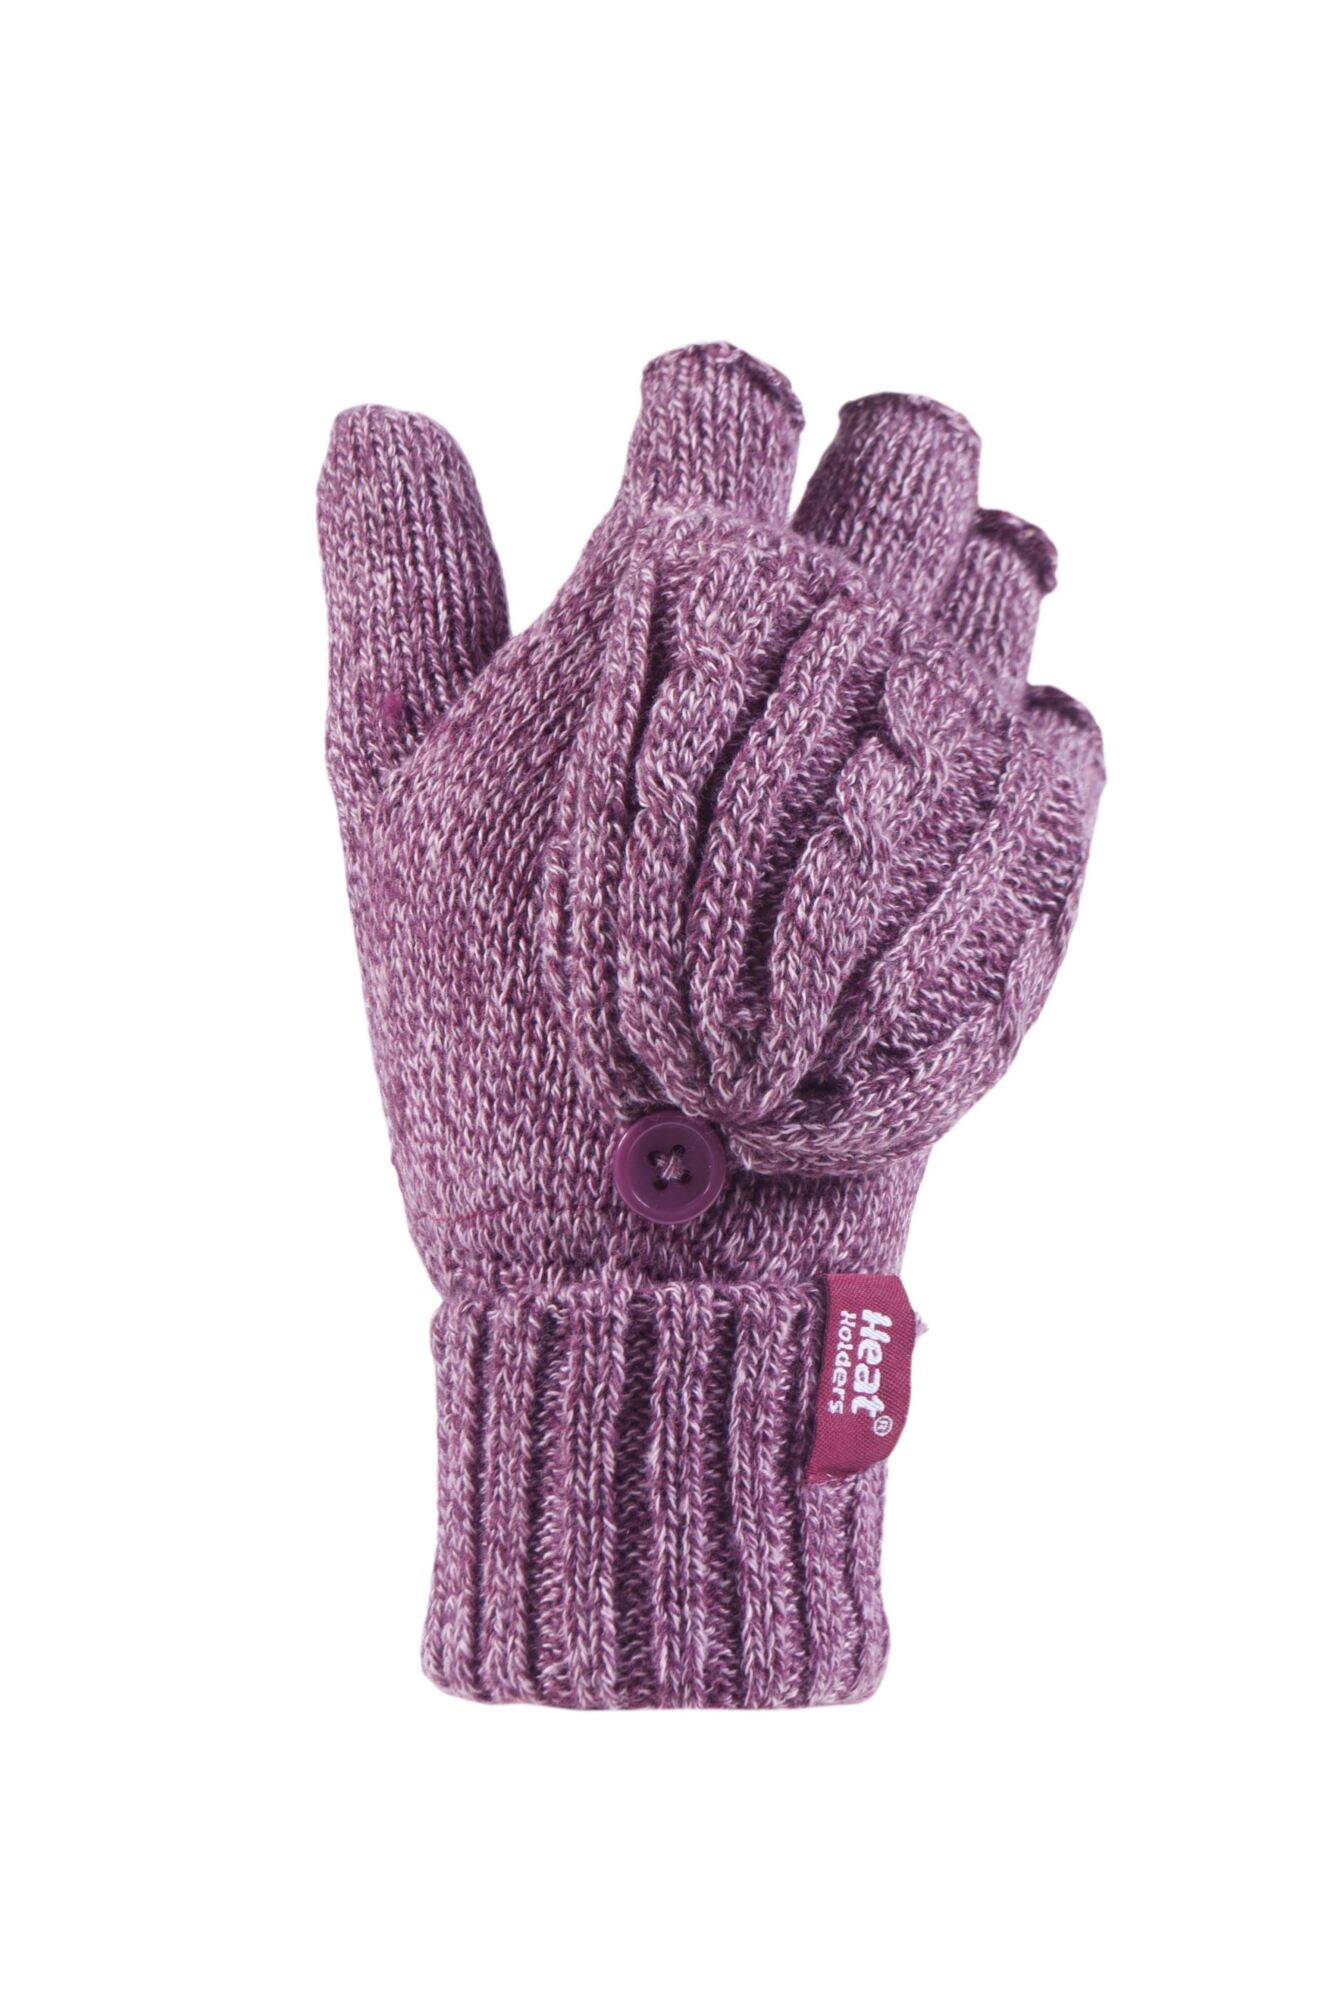  Ladies 1 Pair Heat Holders 3.2 Tog Heatweaver Yarn Fingerless Gloves with Converter Mitt